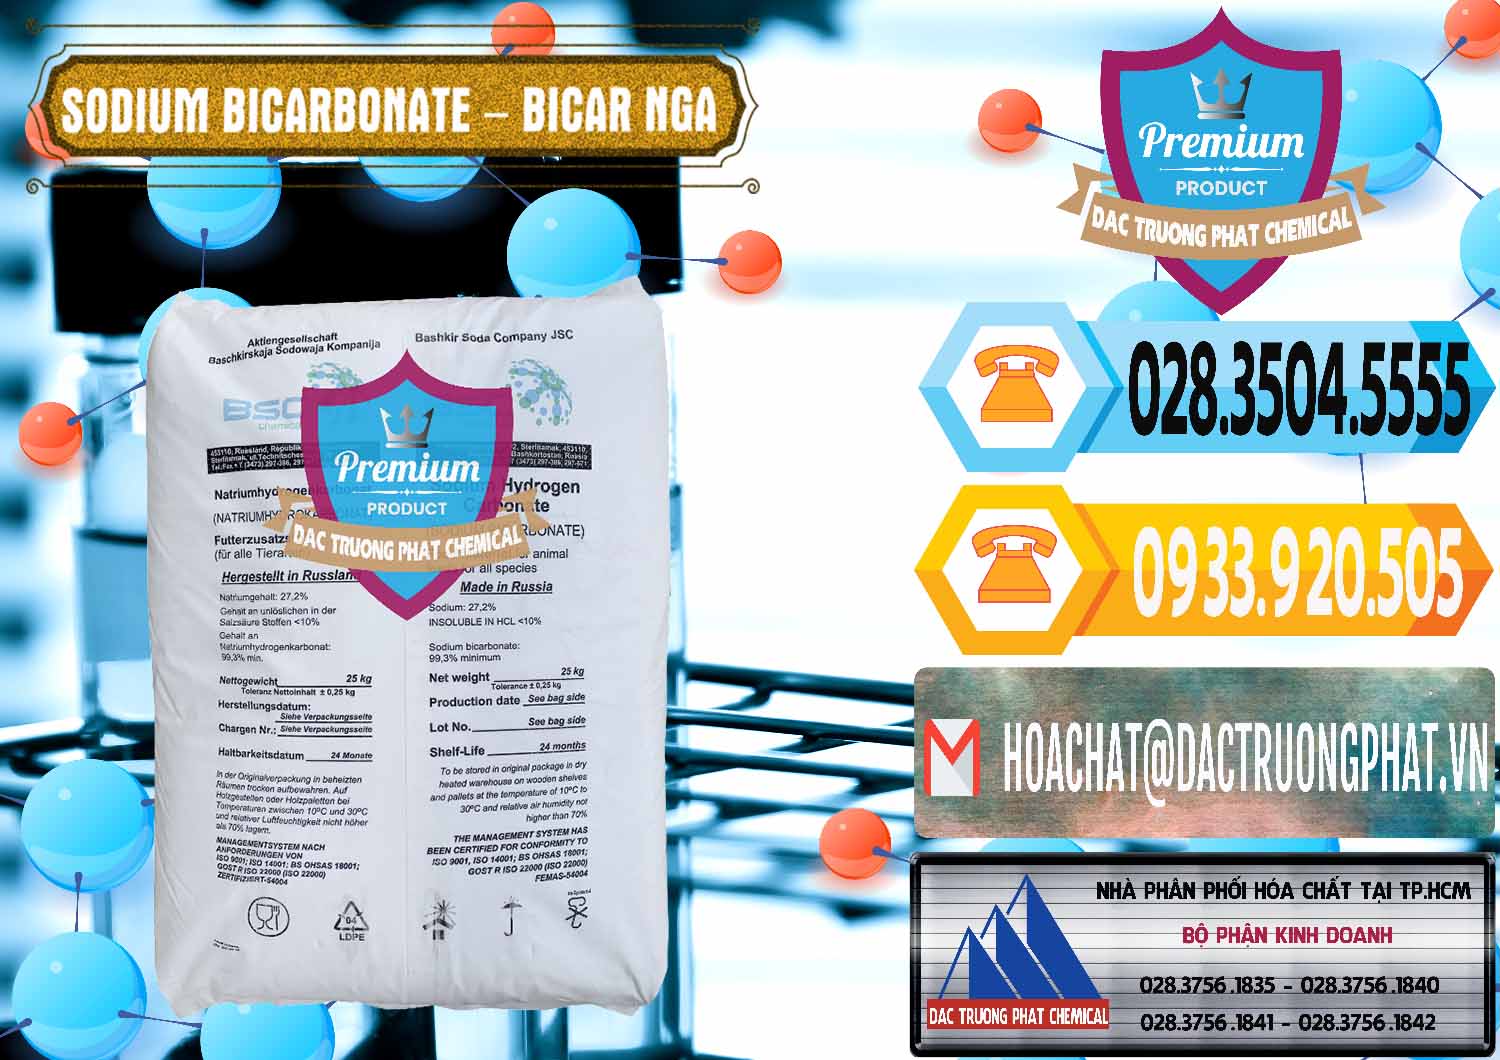 Cty nhập khẩu & bán Sodium Bicarbonate – Bicar NaHCO3 Nga Russia - 0425 - Cty kinh doanh - phân phối hóa chất tại TP.HCM - hoachattayrua.net